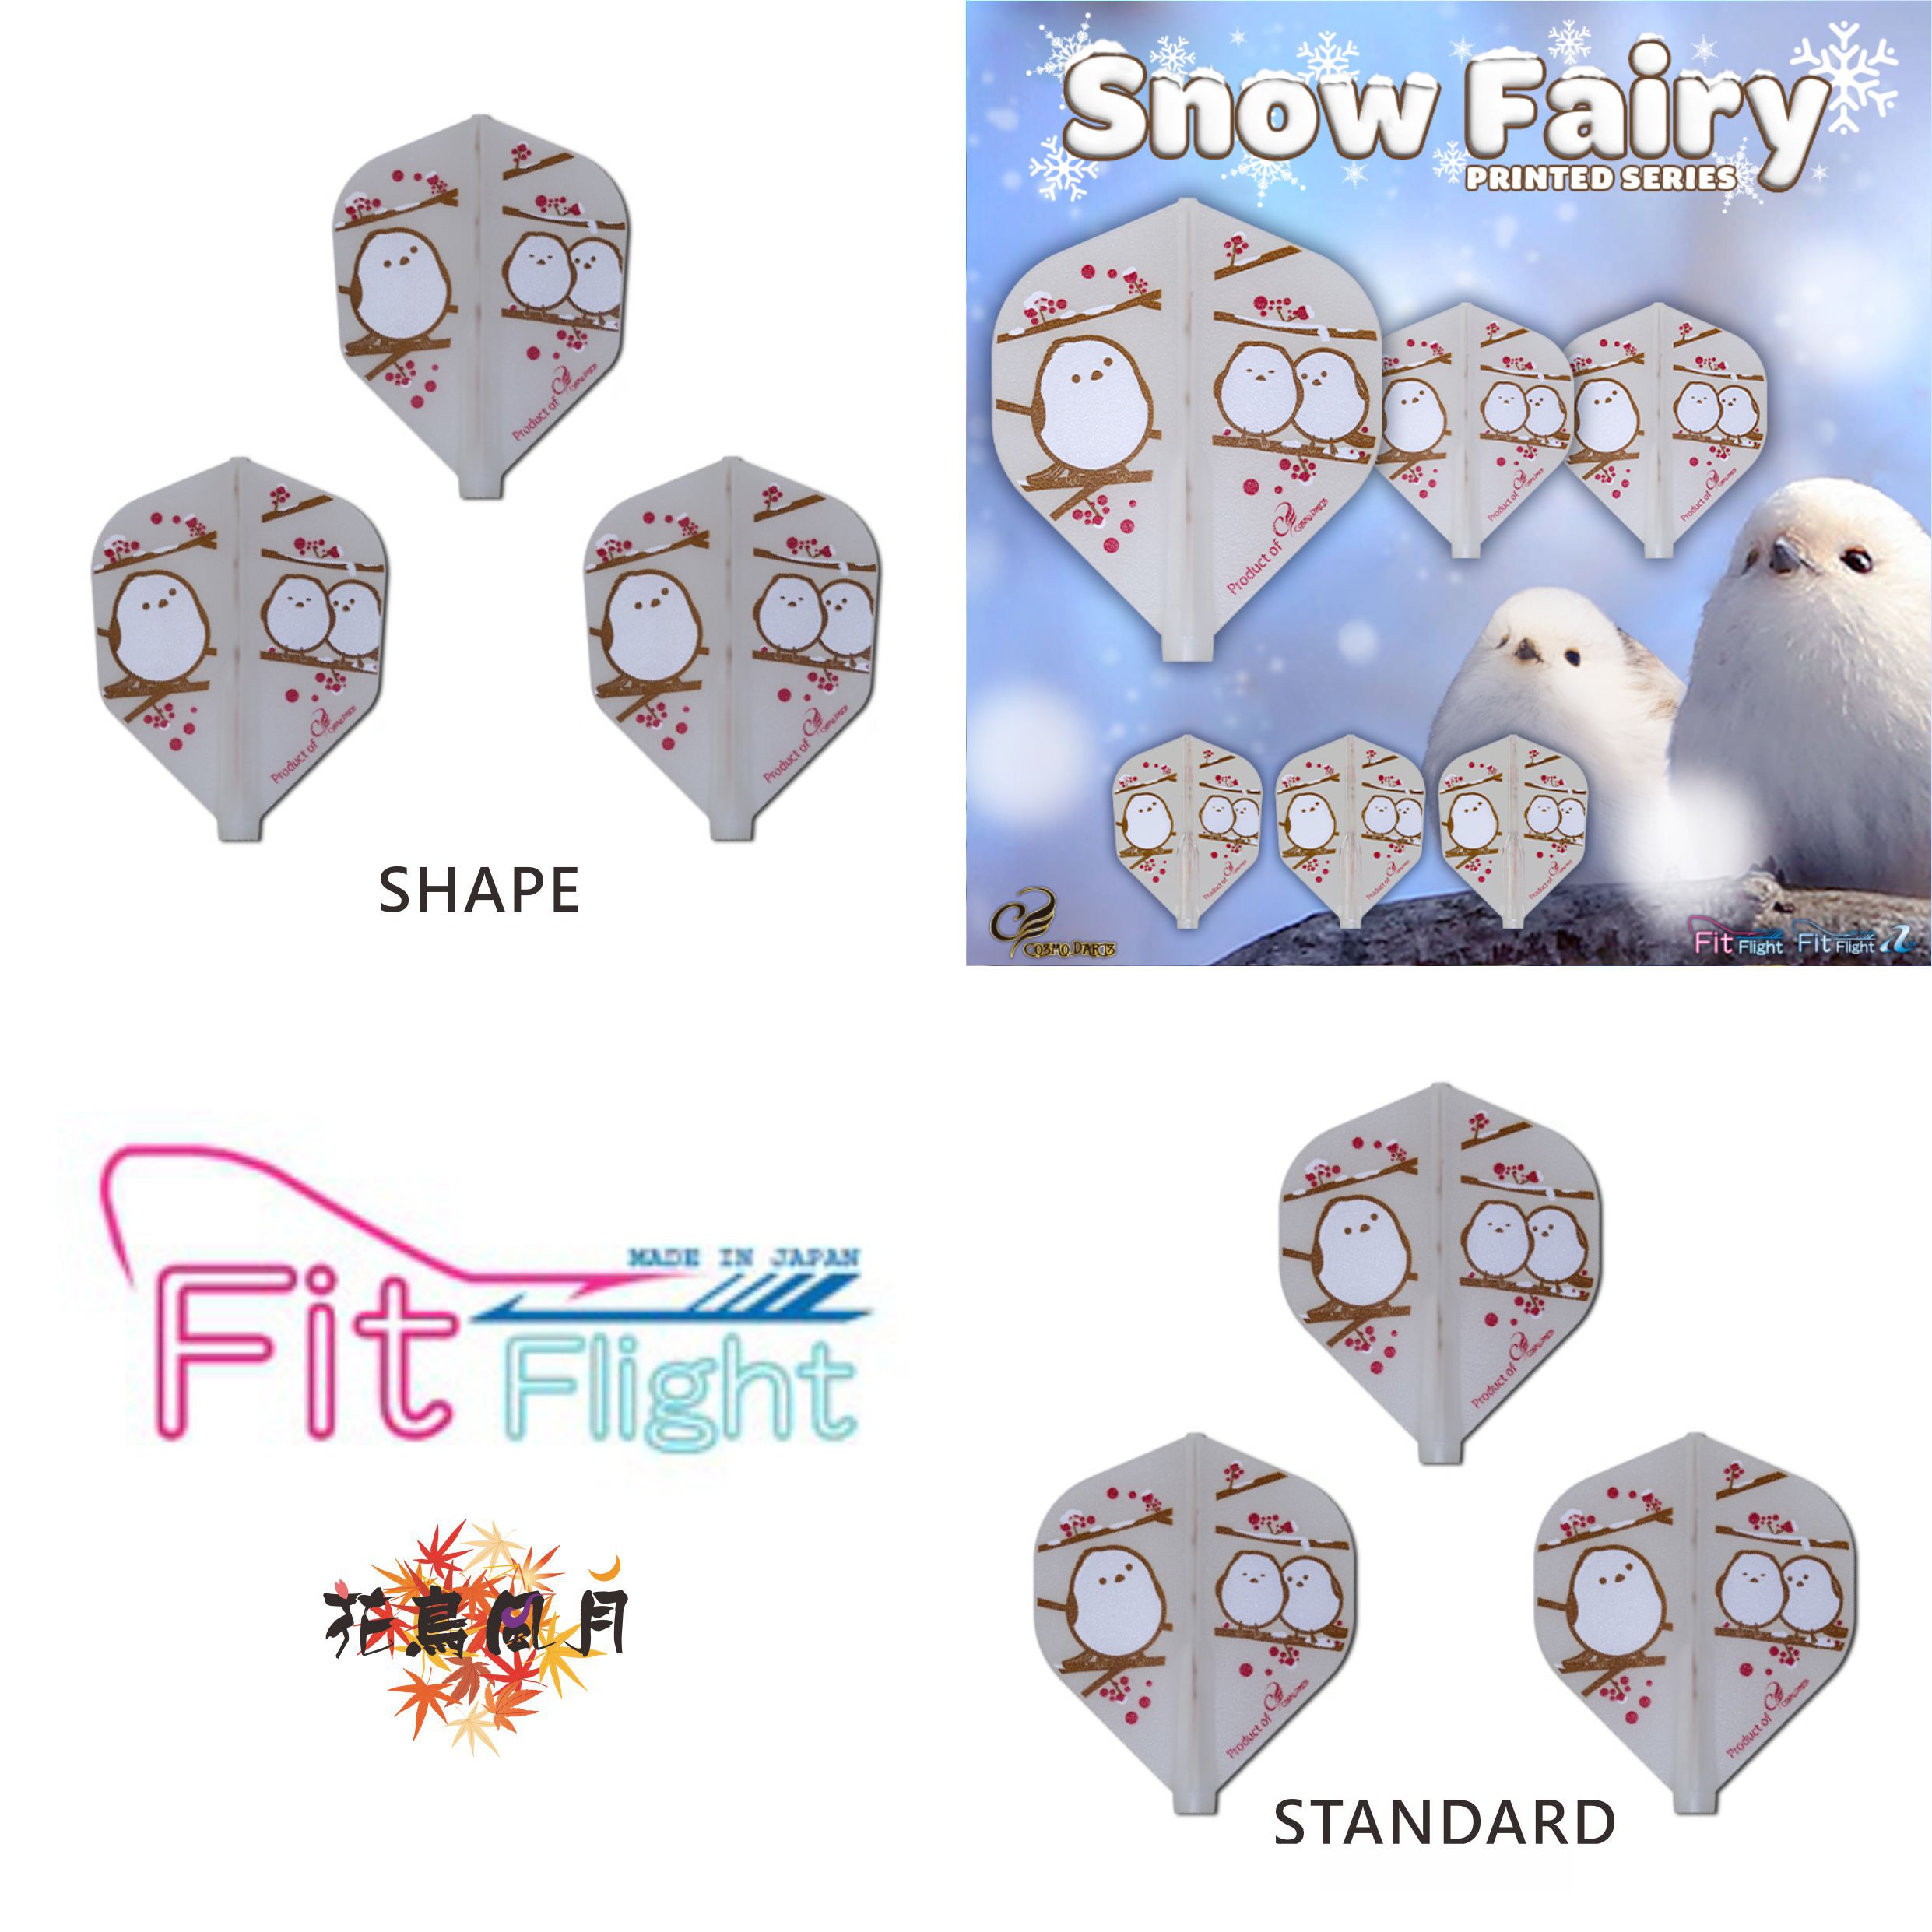 Fit-Flight-Printed-Series-Snow-Fairy.jpg